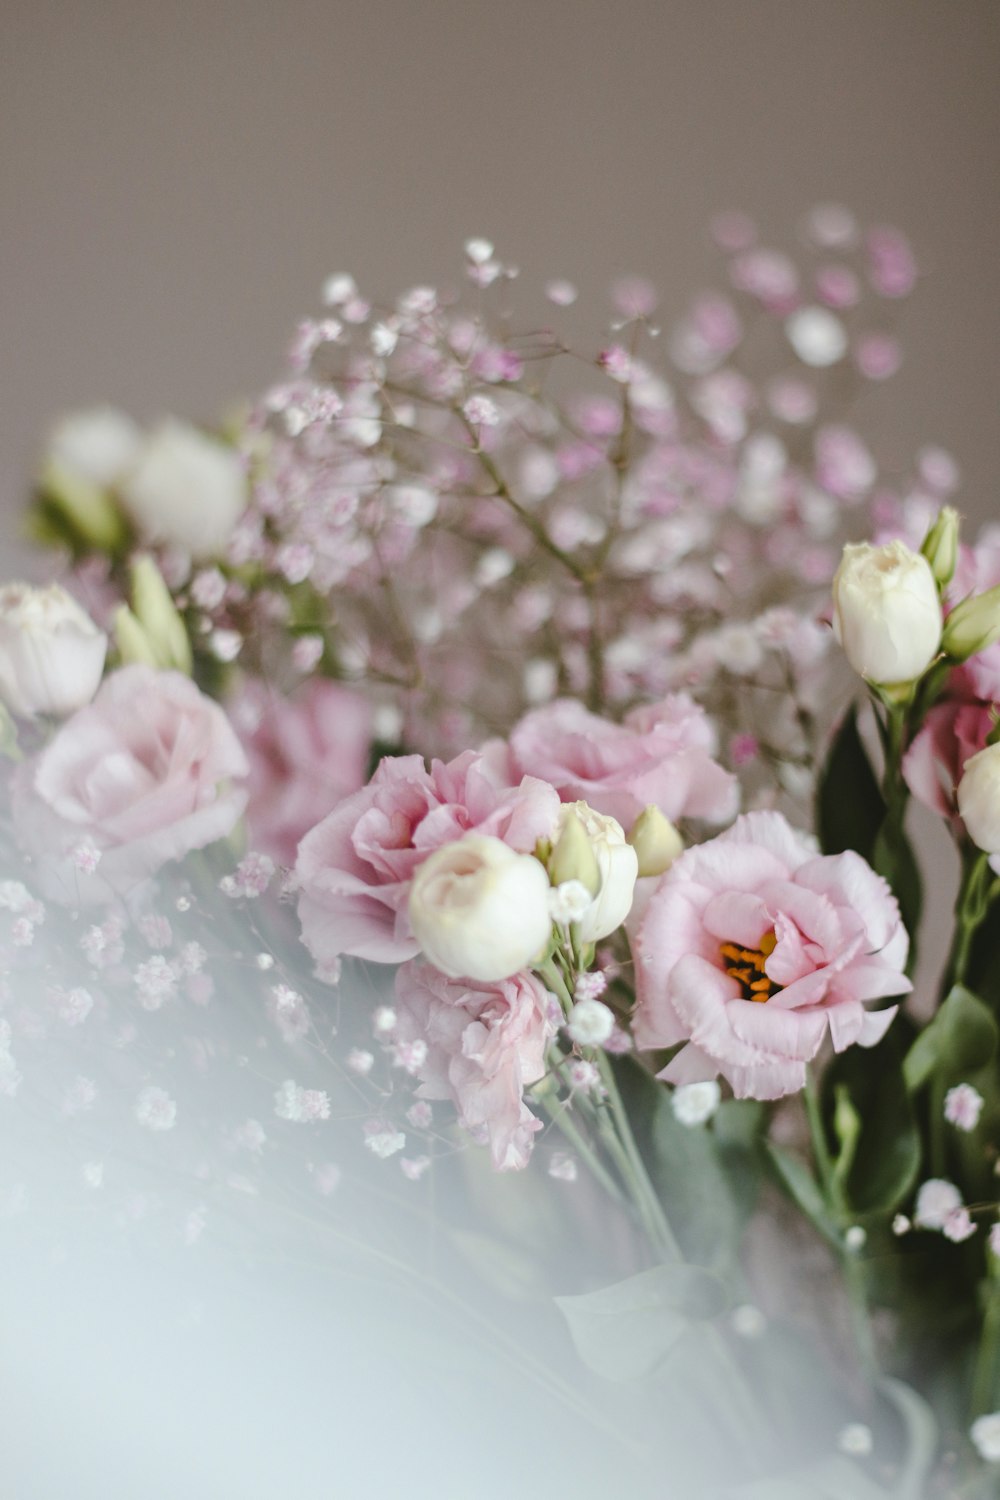 투명 유리 꽃병에 분홍색과 흰색 장미